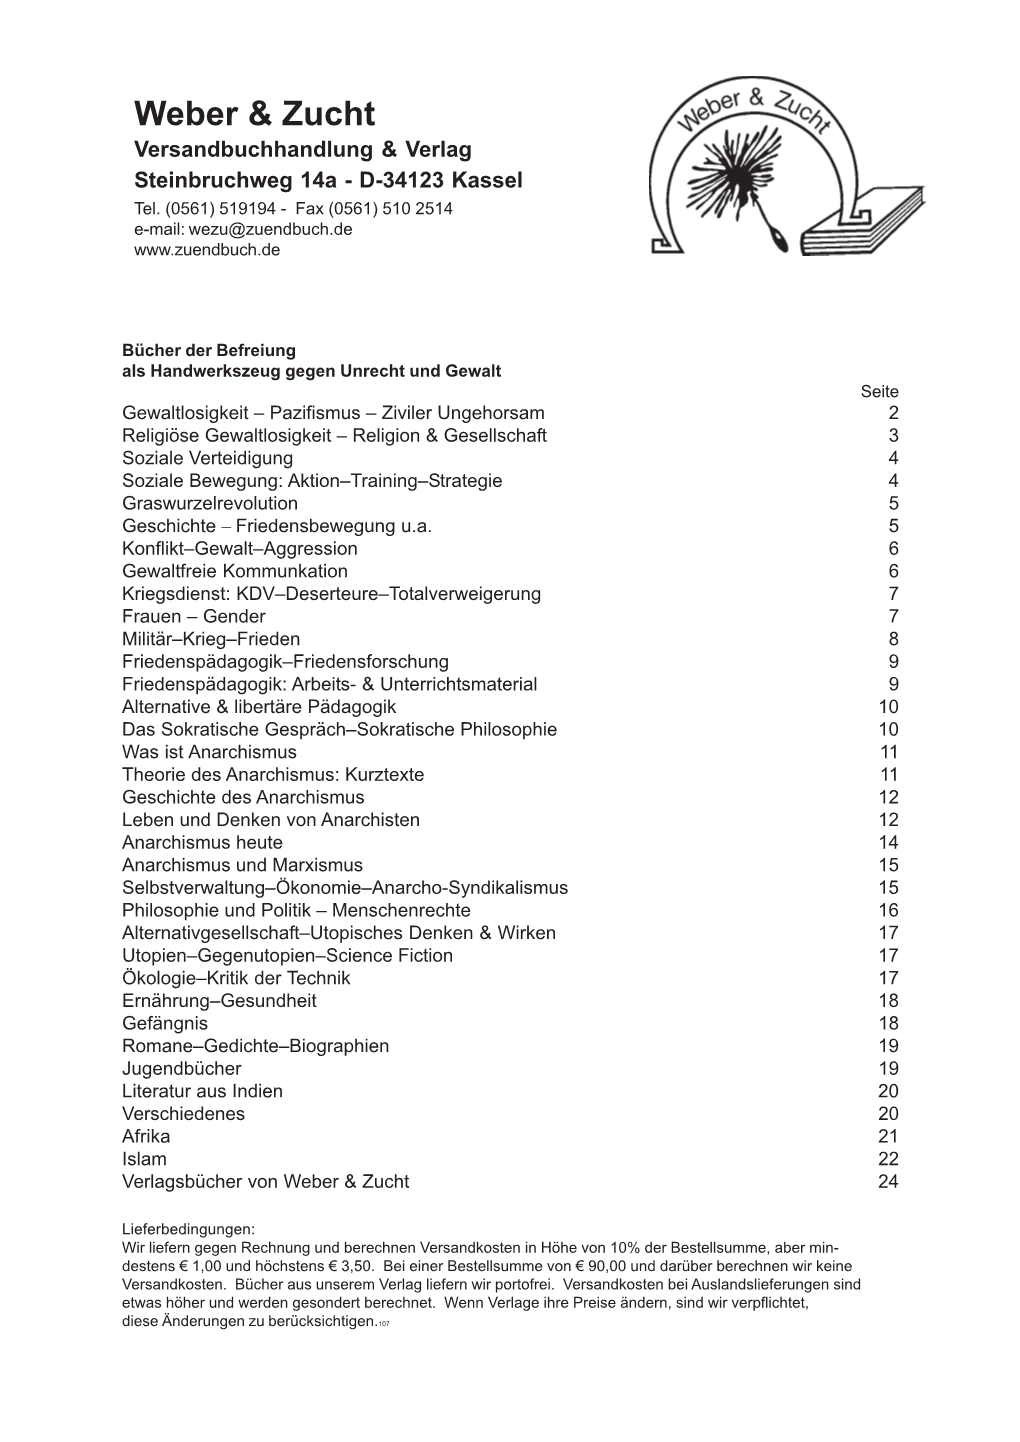 Weber & Zucht Versandbuch Katalog